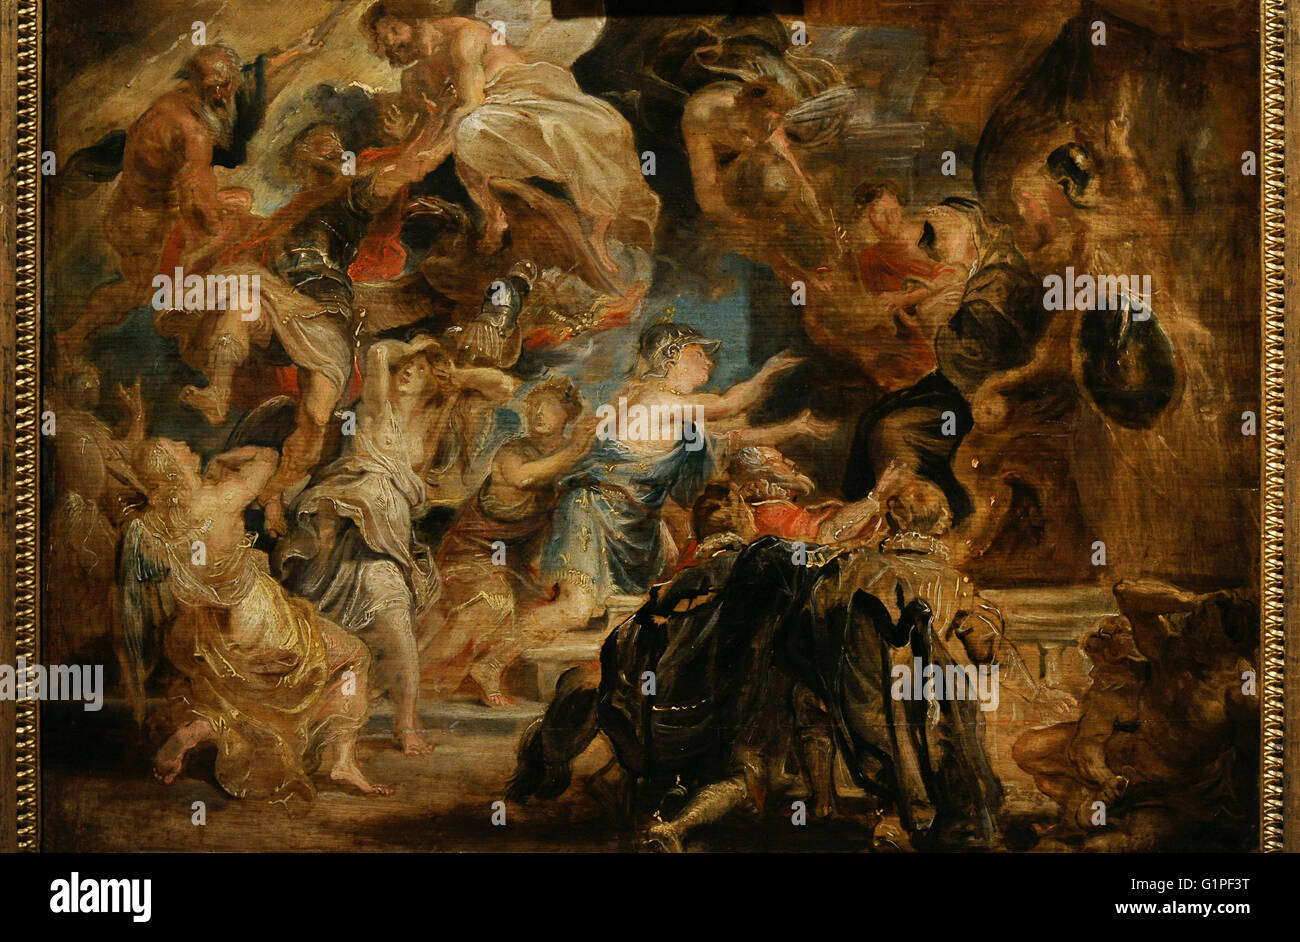 Peter Paul Rubens (1577-1640). Peintre baroque flamand. La mort de Henri IV et la proclamation de la Régence, 1622. Huile sur panneau. Le Musée de l'Ermitage. Saint Petersburg. La Russie. Banque D'Images